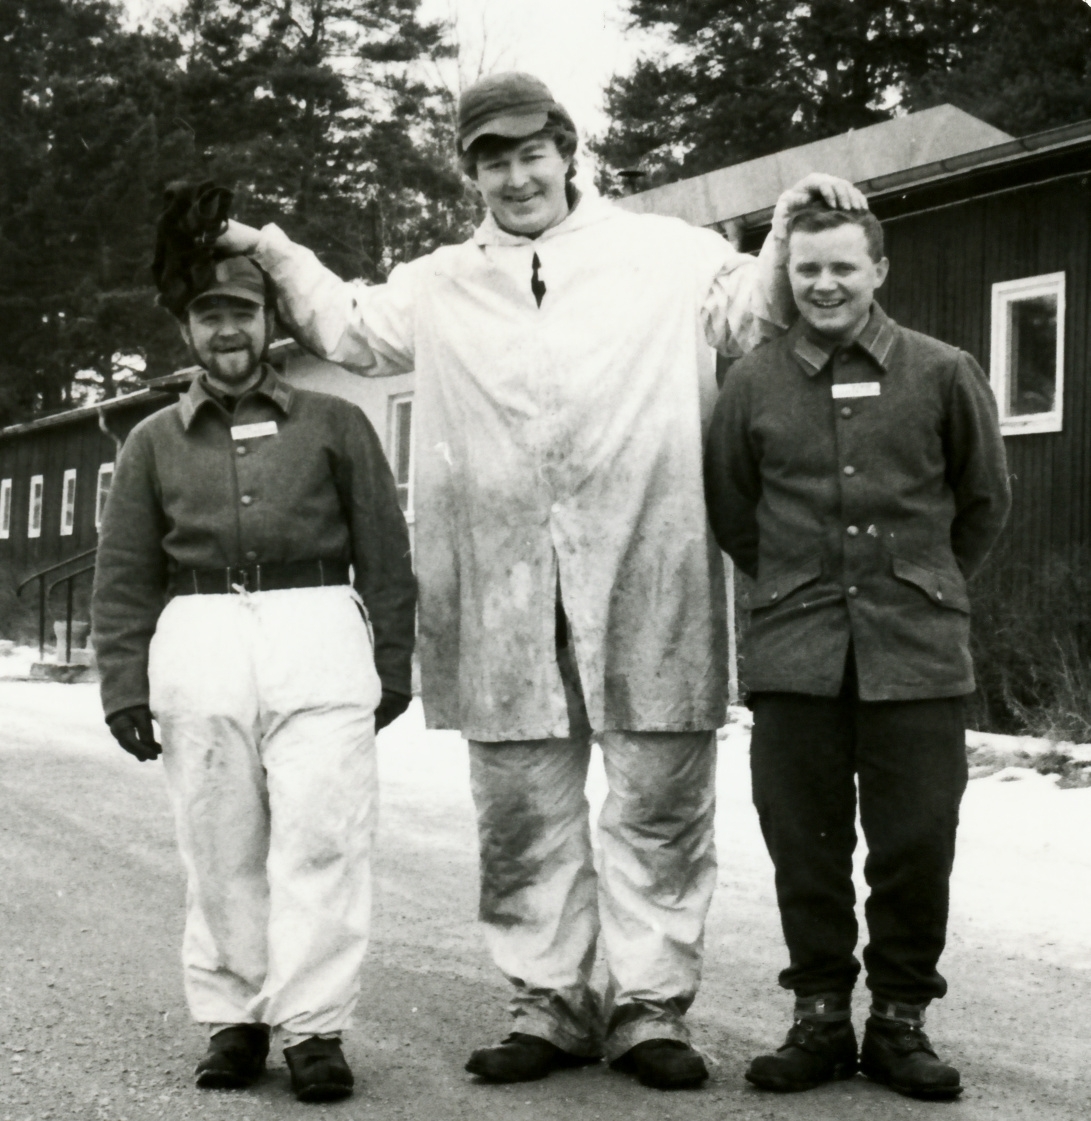 Svältenlägret, omkring 1970

Överfurirerna Johansson och Stig Gustavsson flankerar en storväxt soldat ur kasernkompaniet.